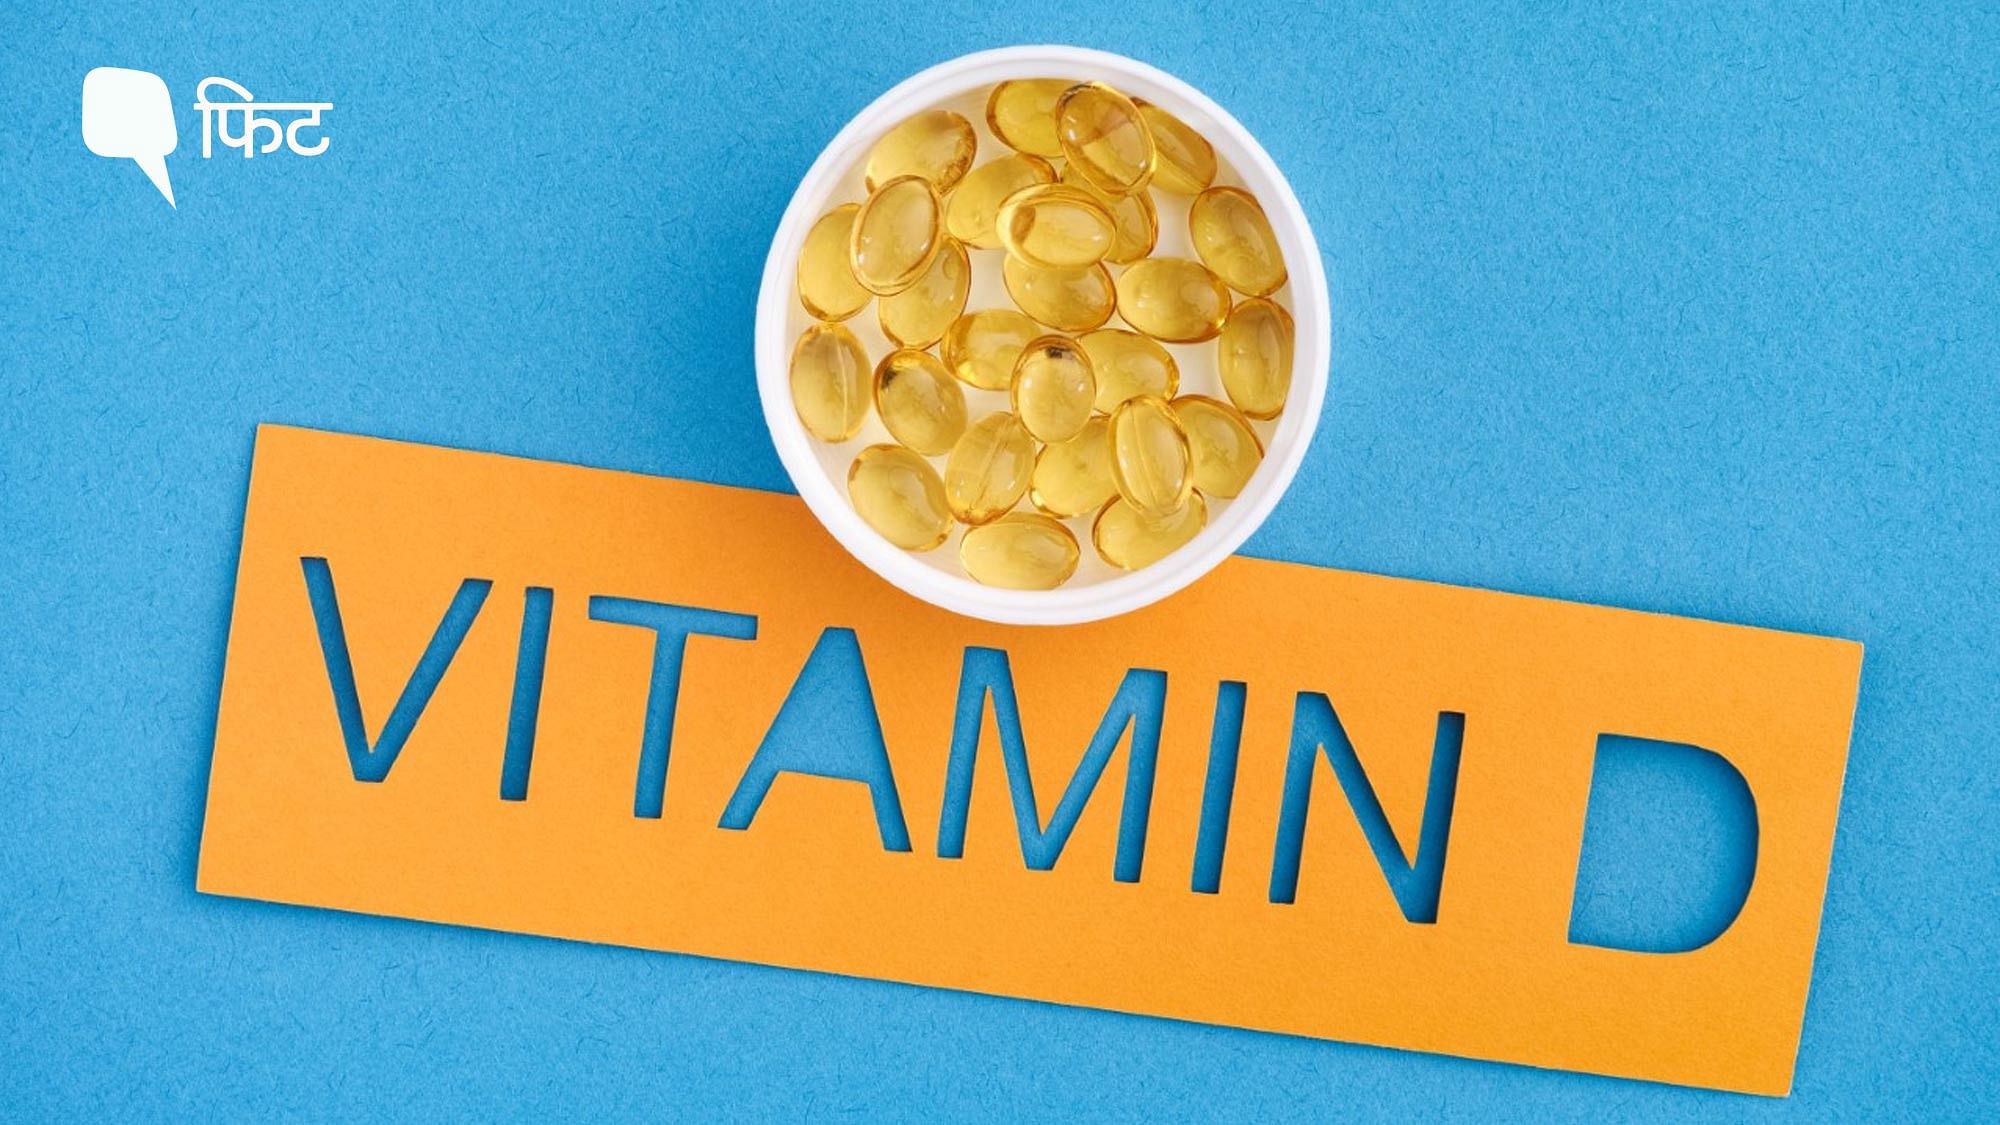 <div class="paragraphs"><p>Vitamin D Deficiency: विटामिन डी का शरीर में कम हो जाना एक बड़ी समस्या है, जानें लक्षण</p></div>